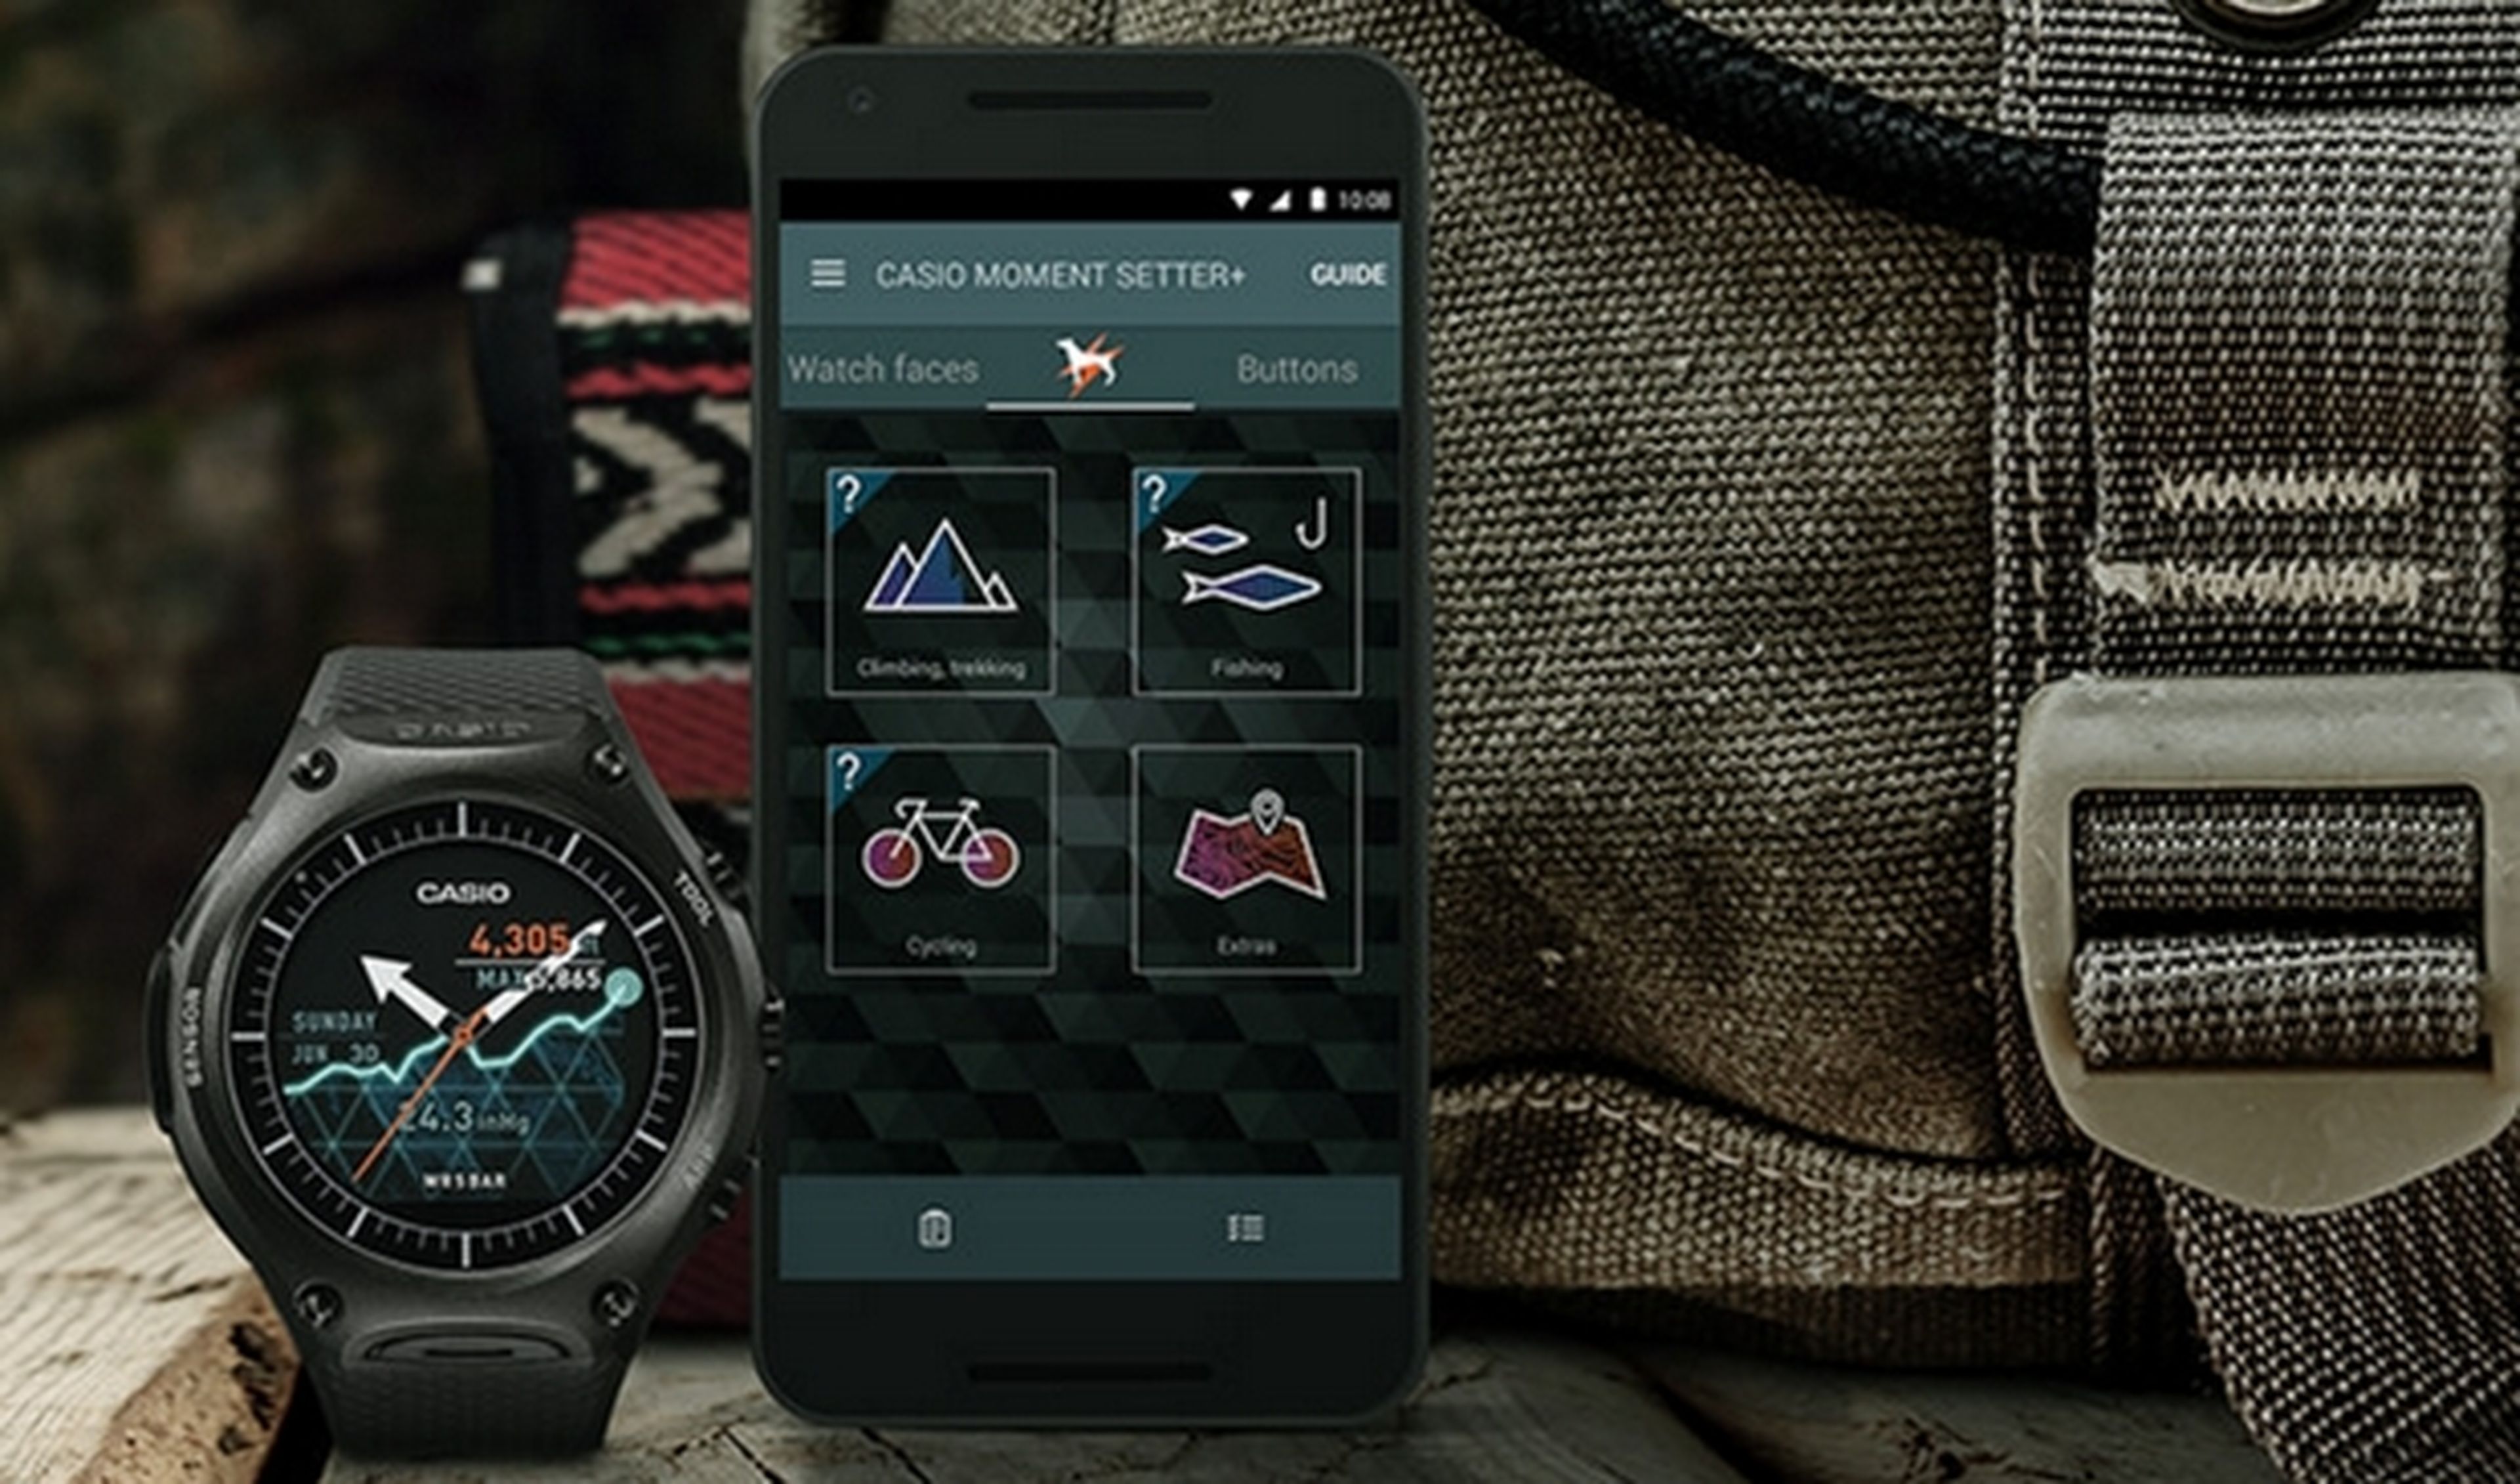 Se desvela el esperado smartwatch Casio Smart Outdoor Watch